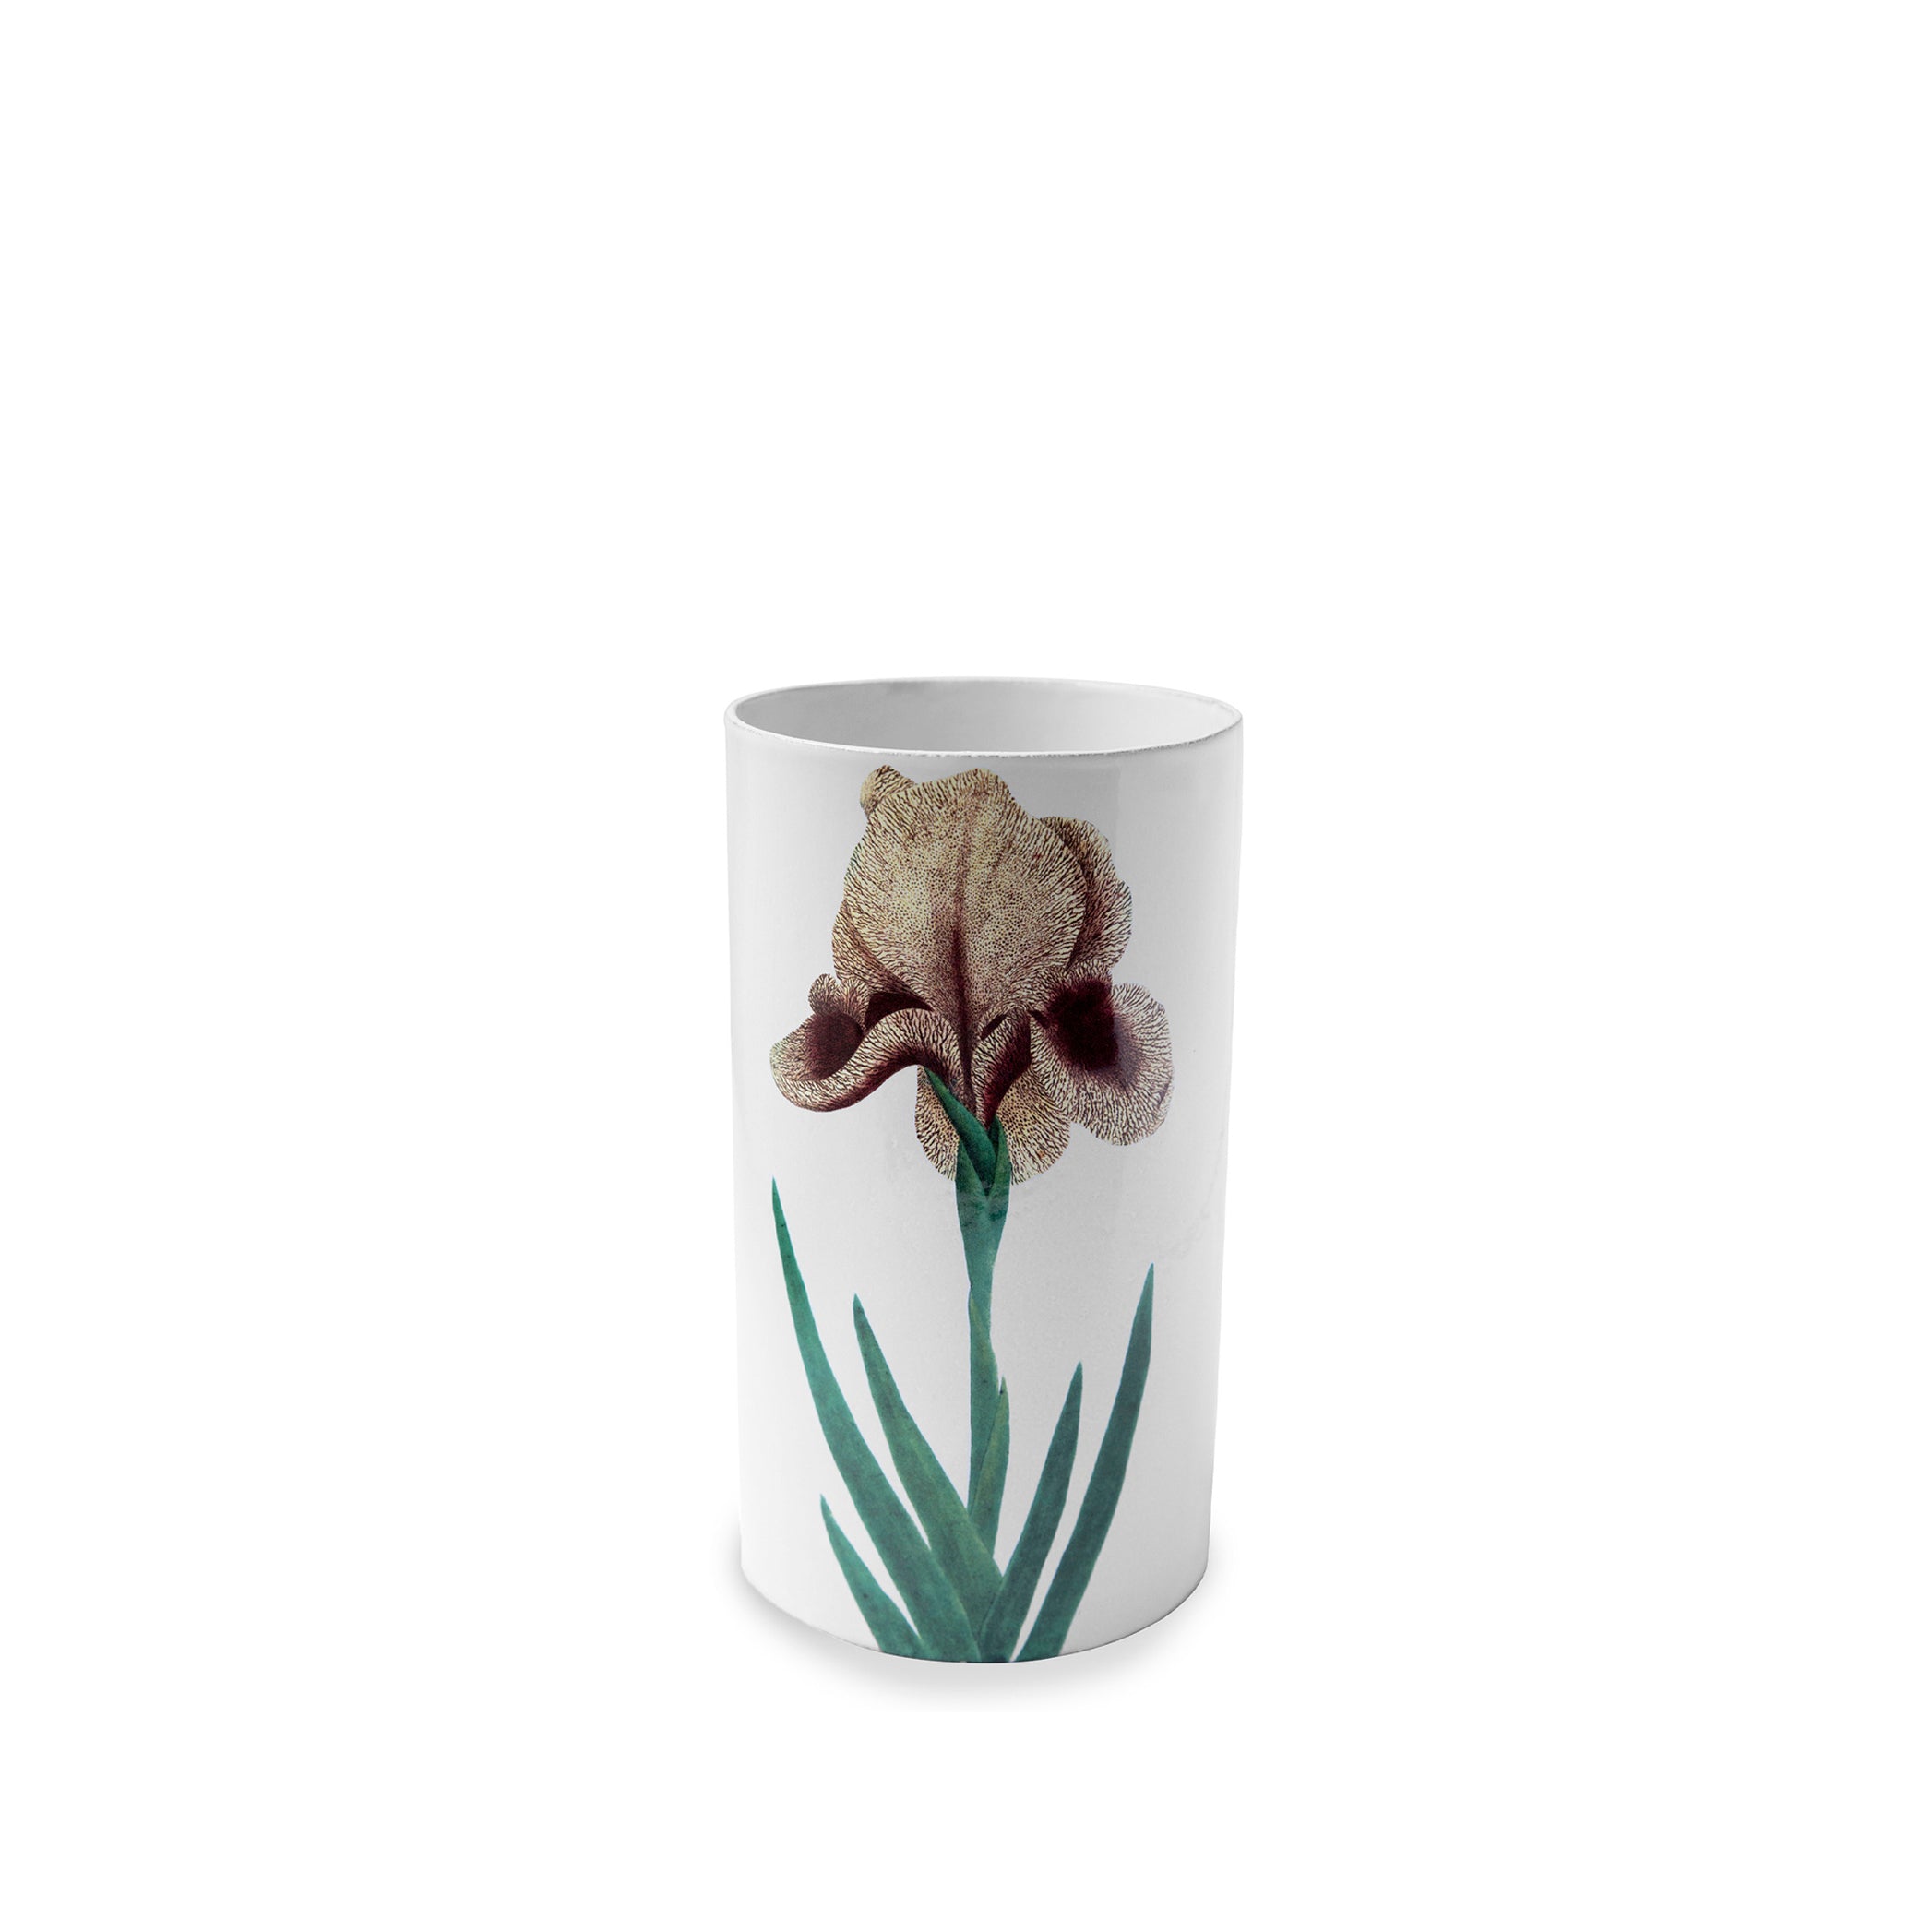 Yellow Iris Vase by Astier de Villatte, 24cm